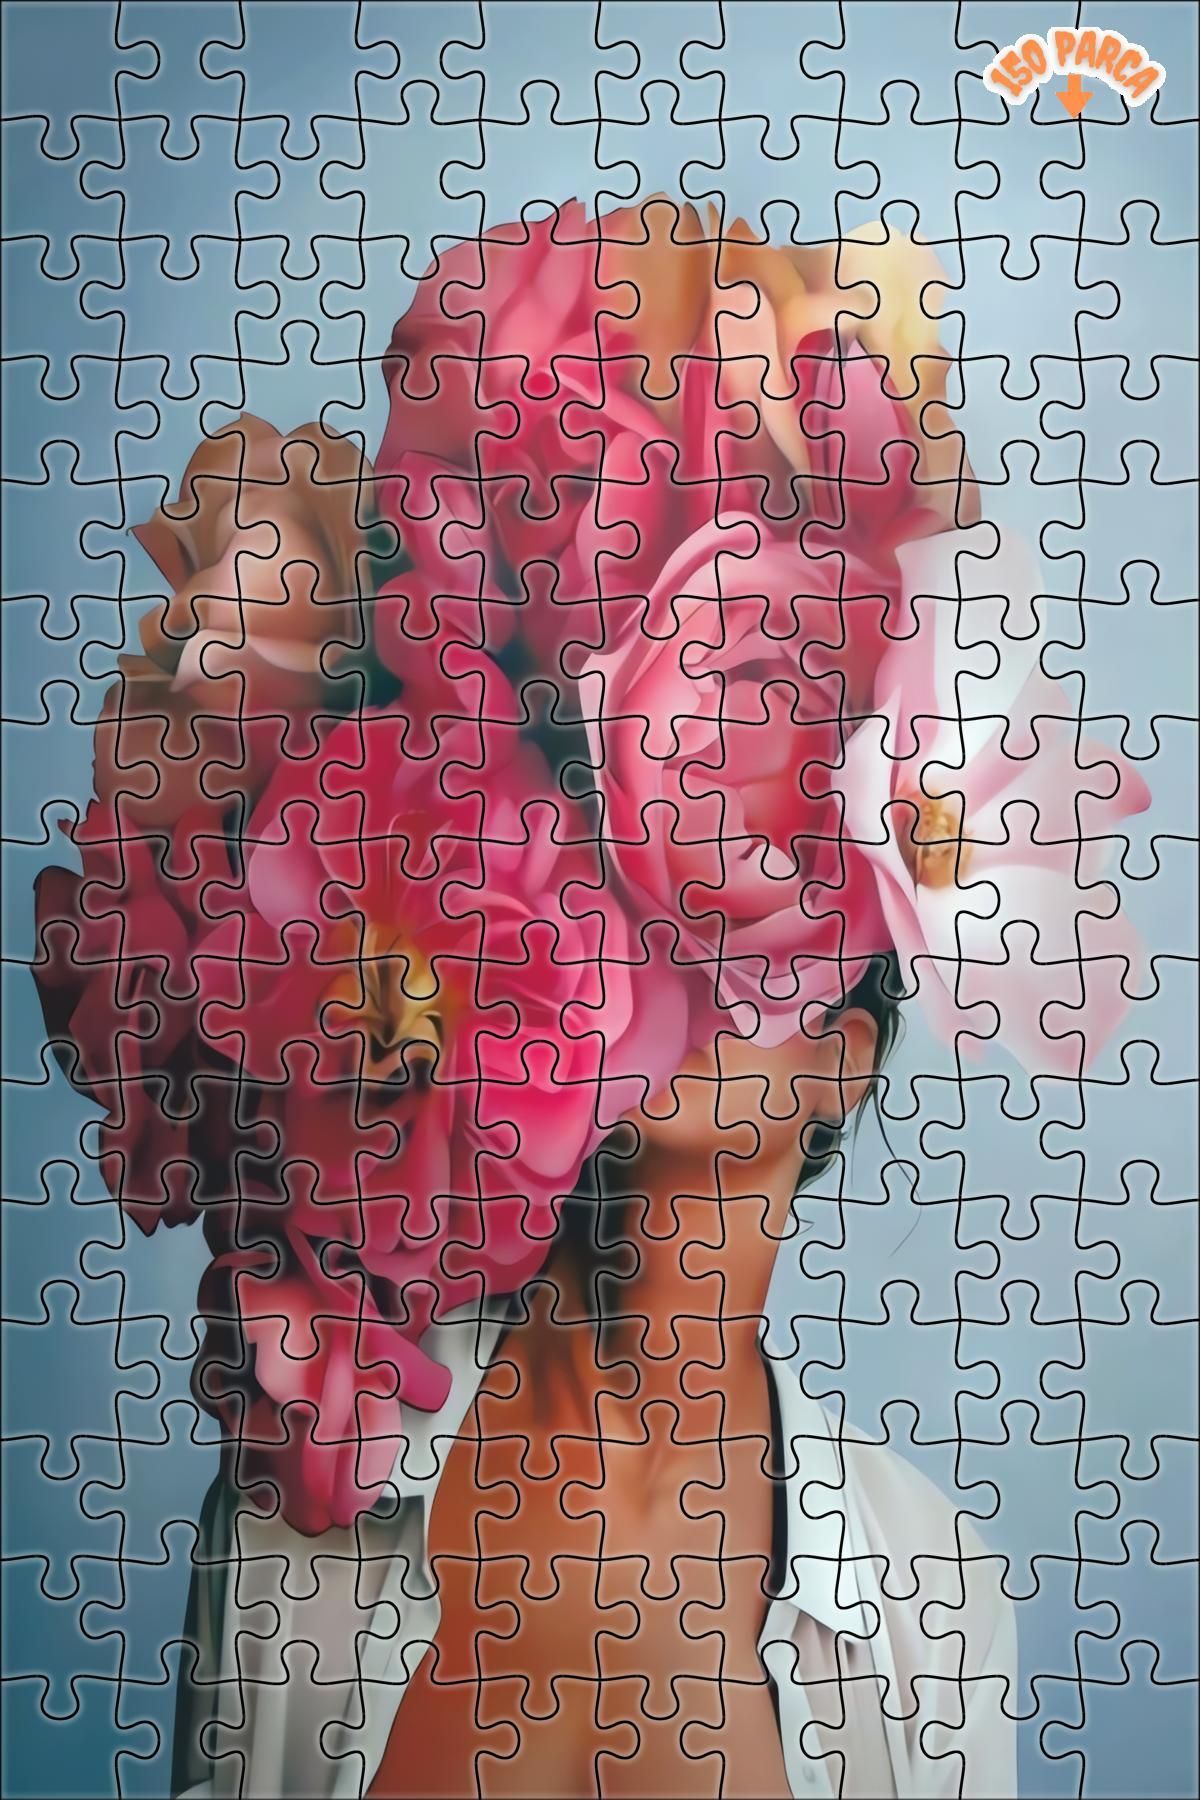 Teona Ahşap Çiçek Saçlı Kadın - Her Mekana Uygun Çift Katlı Çerçeveli Asılabilir Ahşap Puzzle 150 PARÇA 20X30